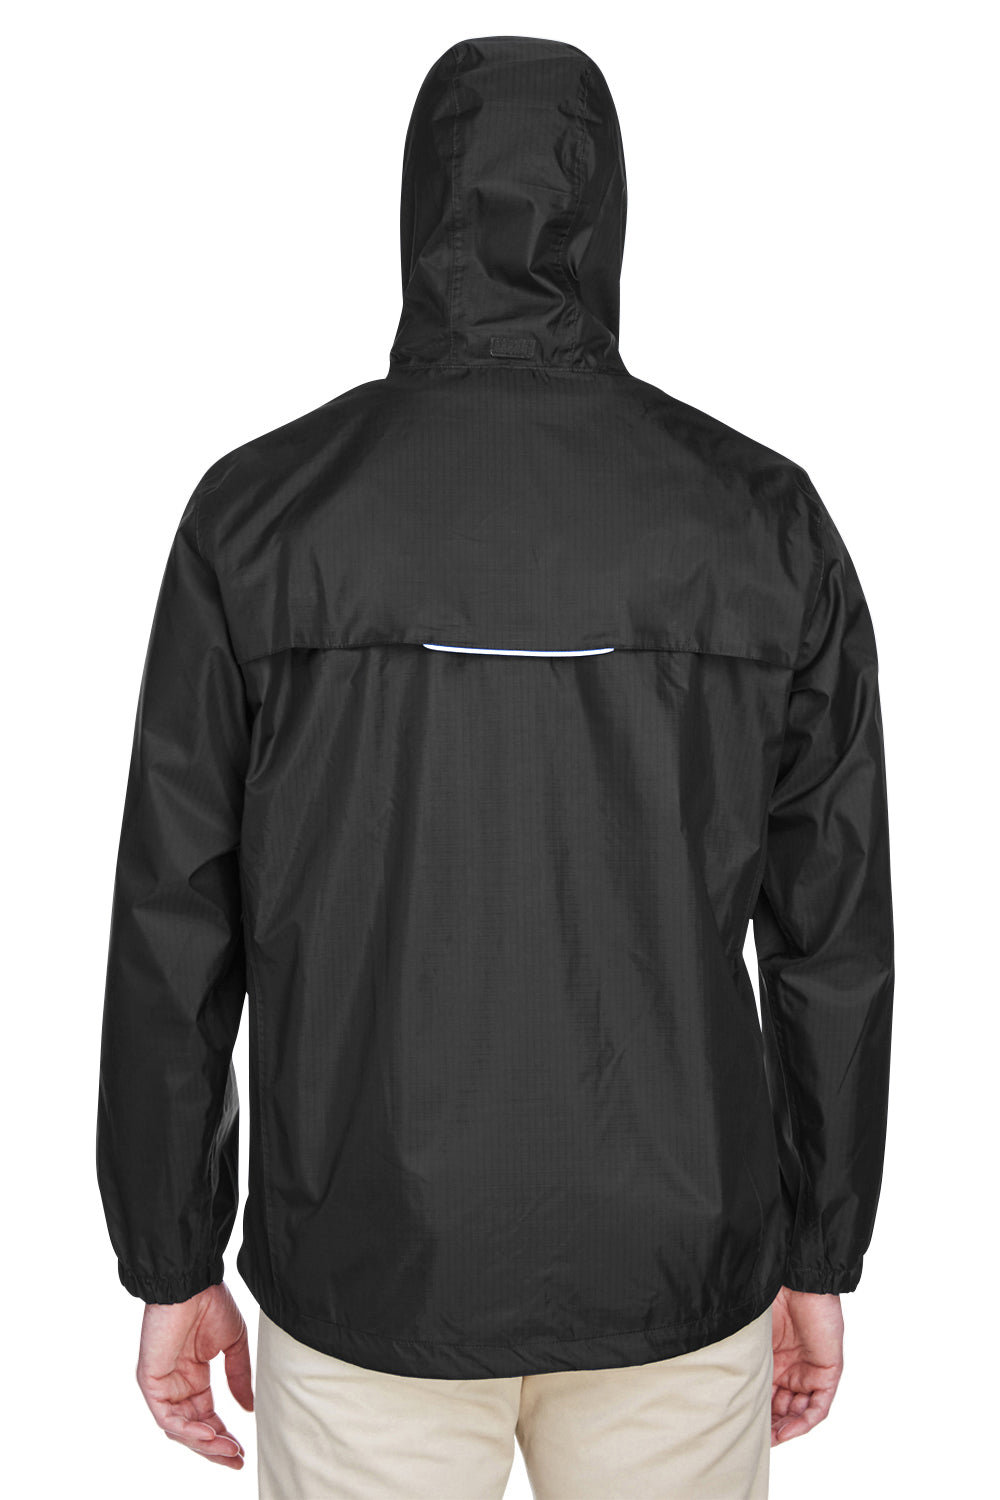 Core 365 88185 Mens Climate Waterproof Full Zip Hooded Jacket Black Back